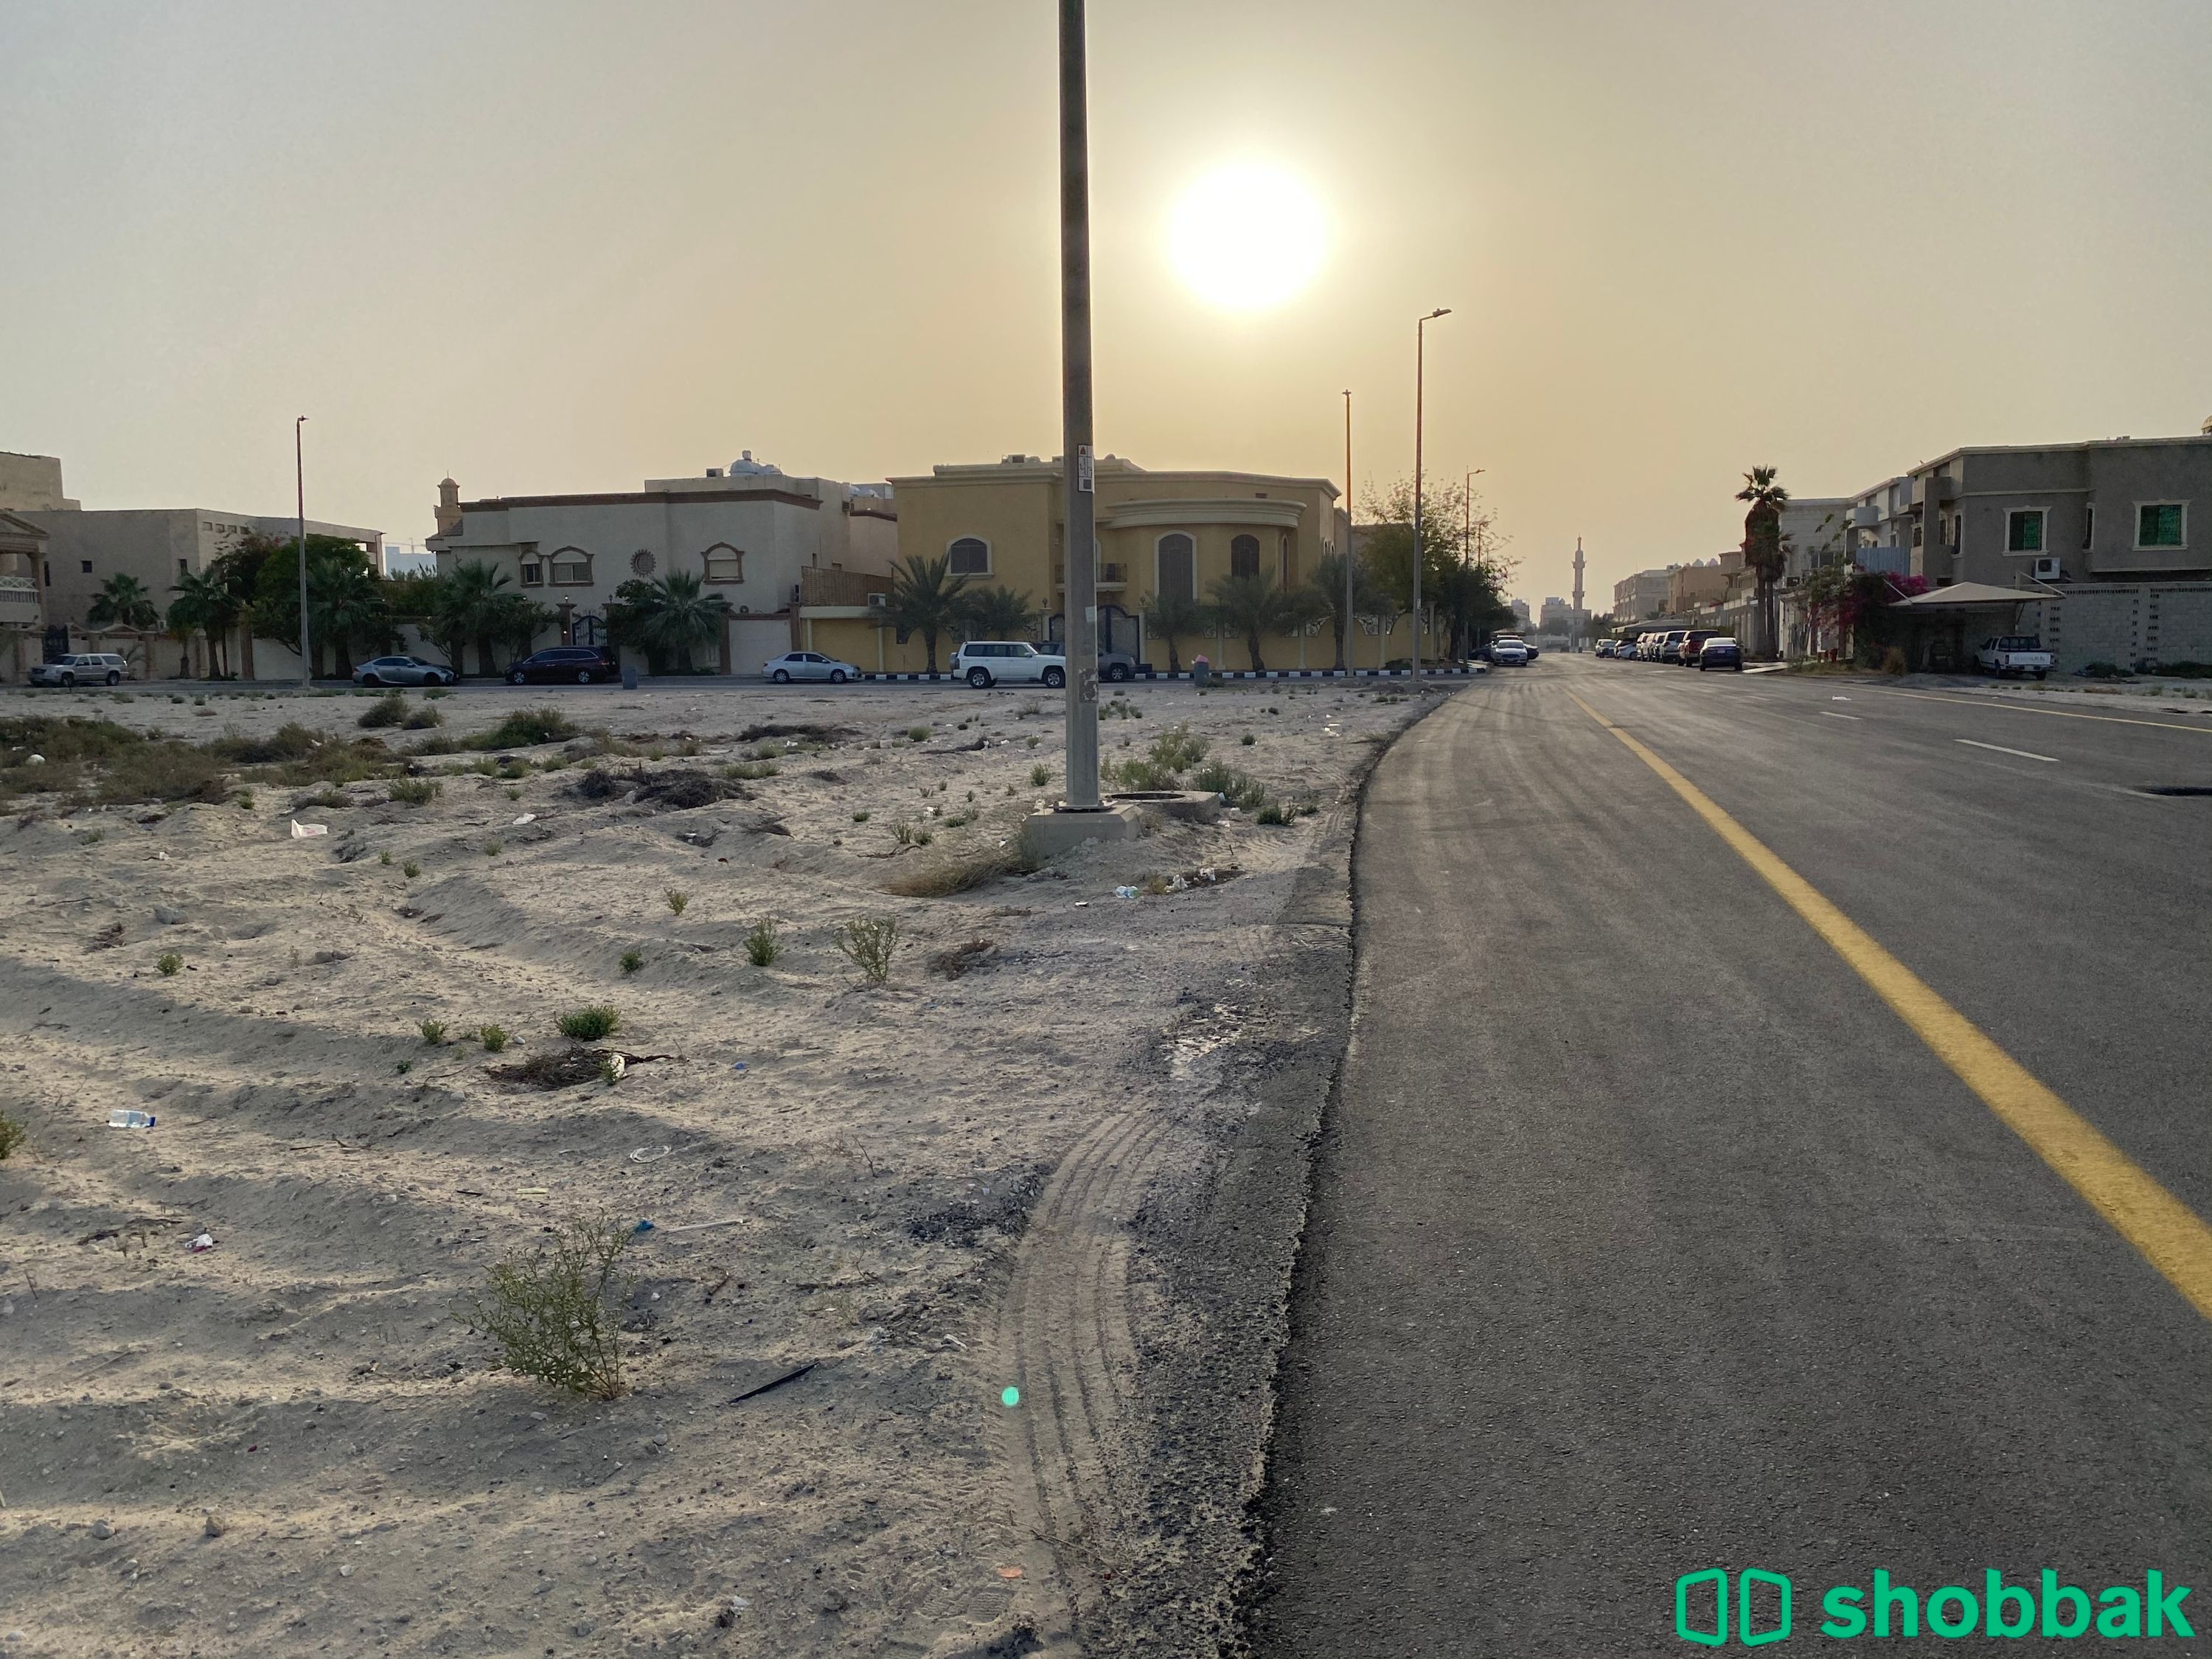 ارض خام للبيع بالدمام شباك السعودية